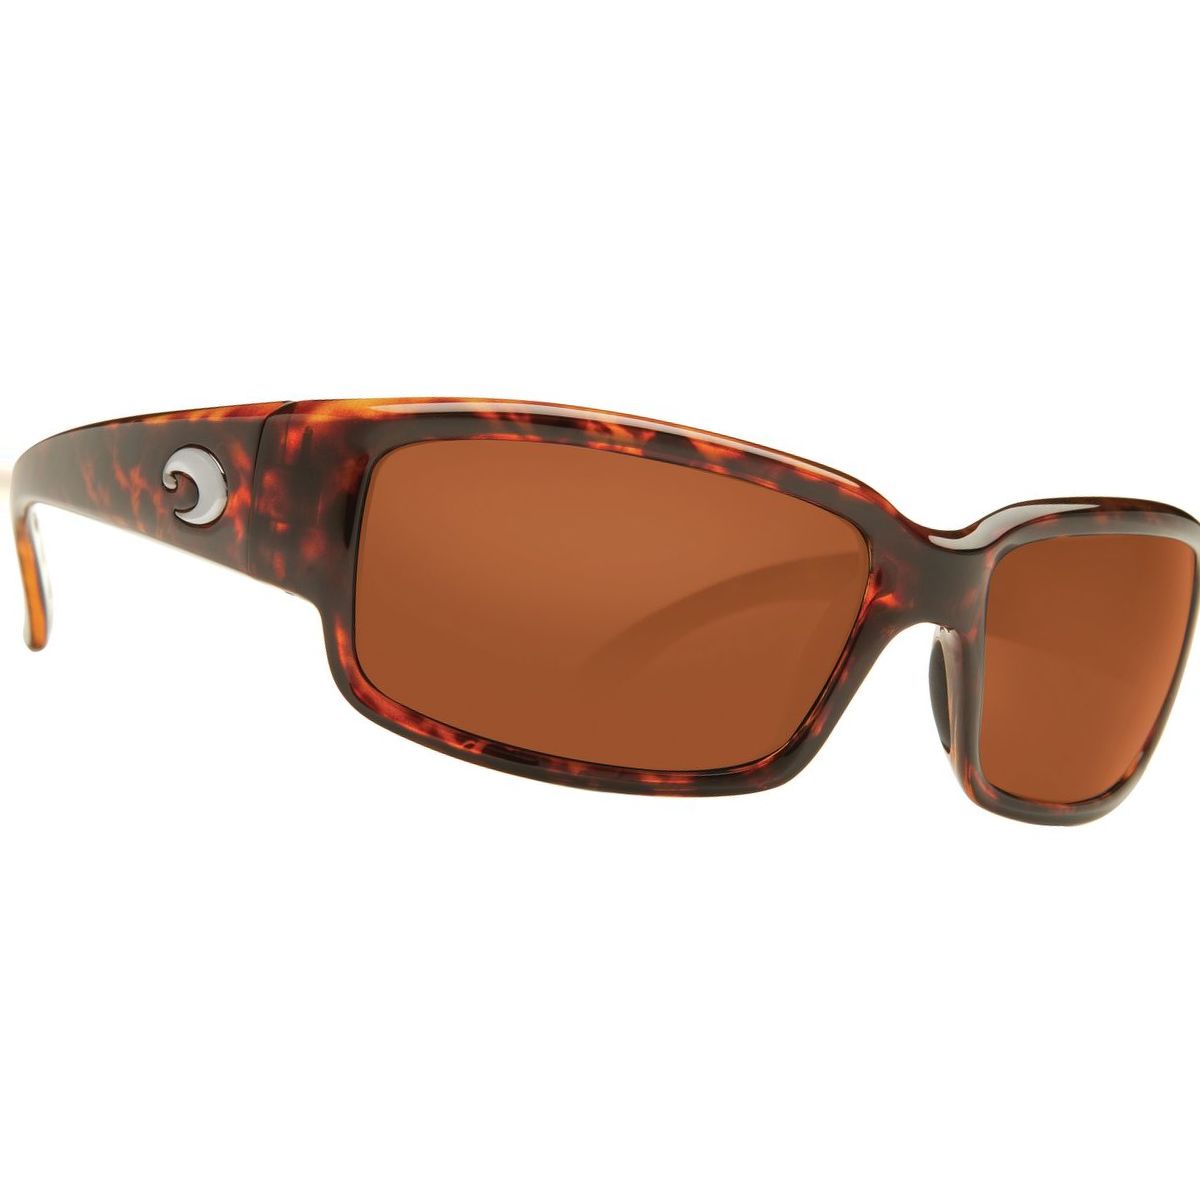 Costa Caballito 580P Polarized Sunglasses - Women's